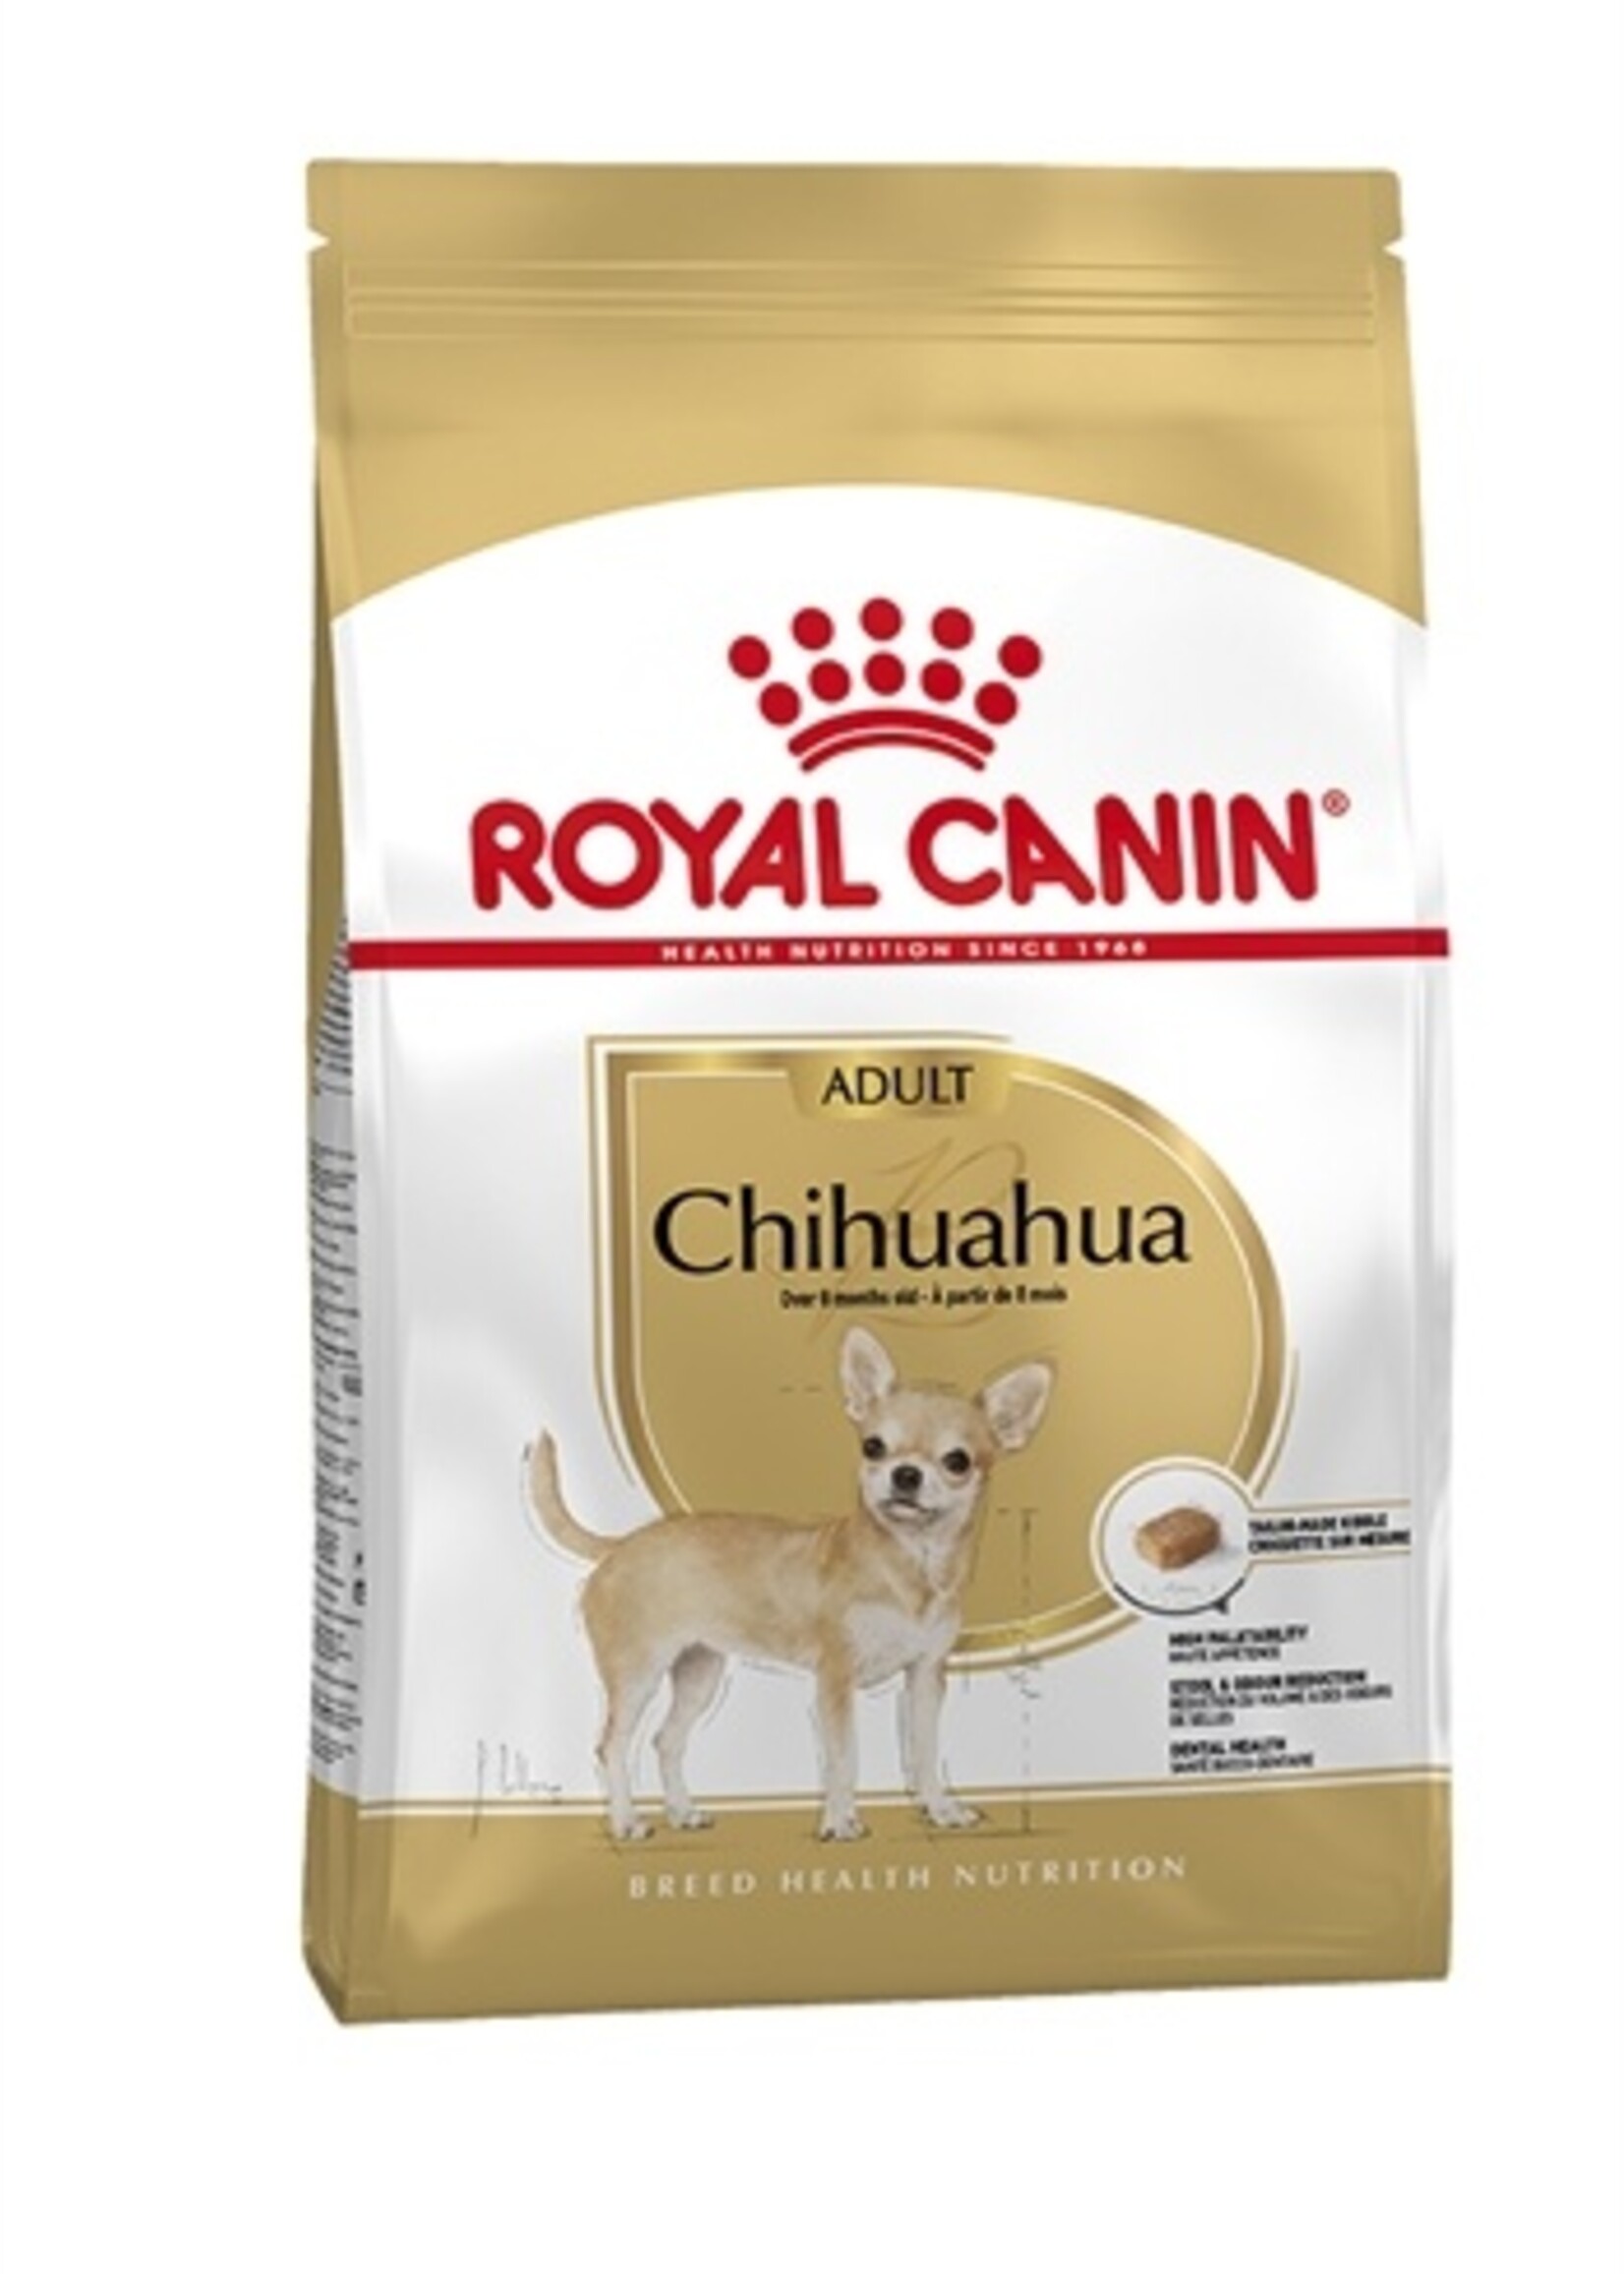 Royal canin Royal canin chihuahua